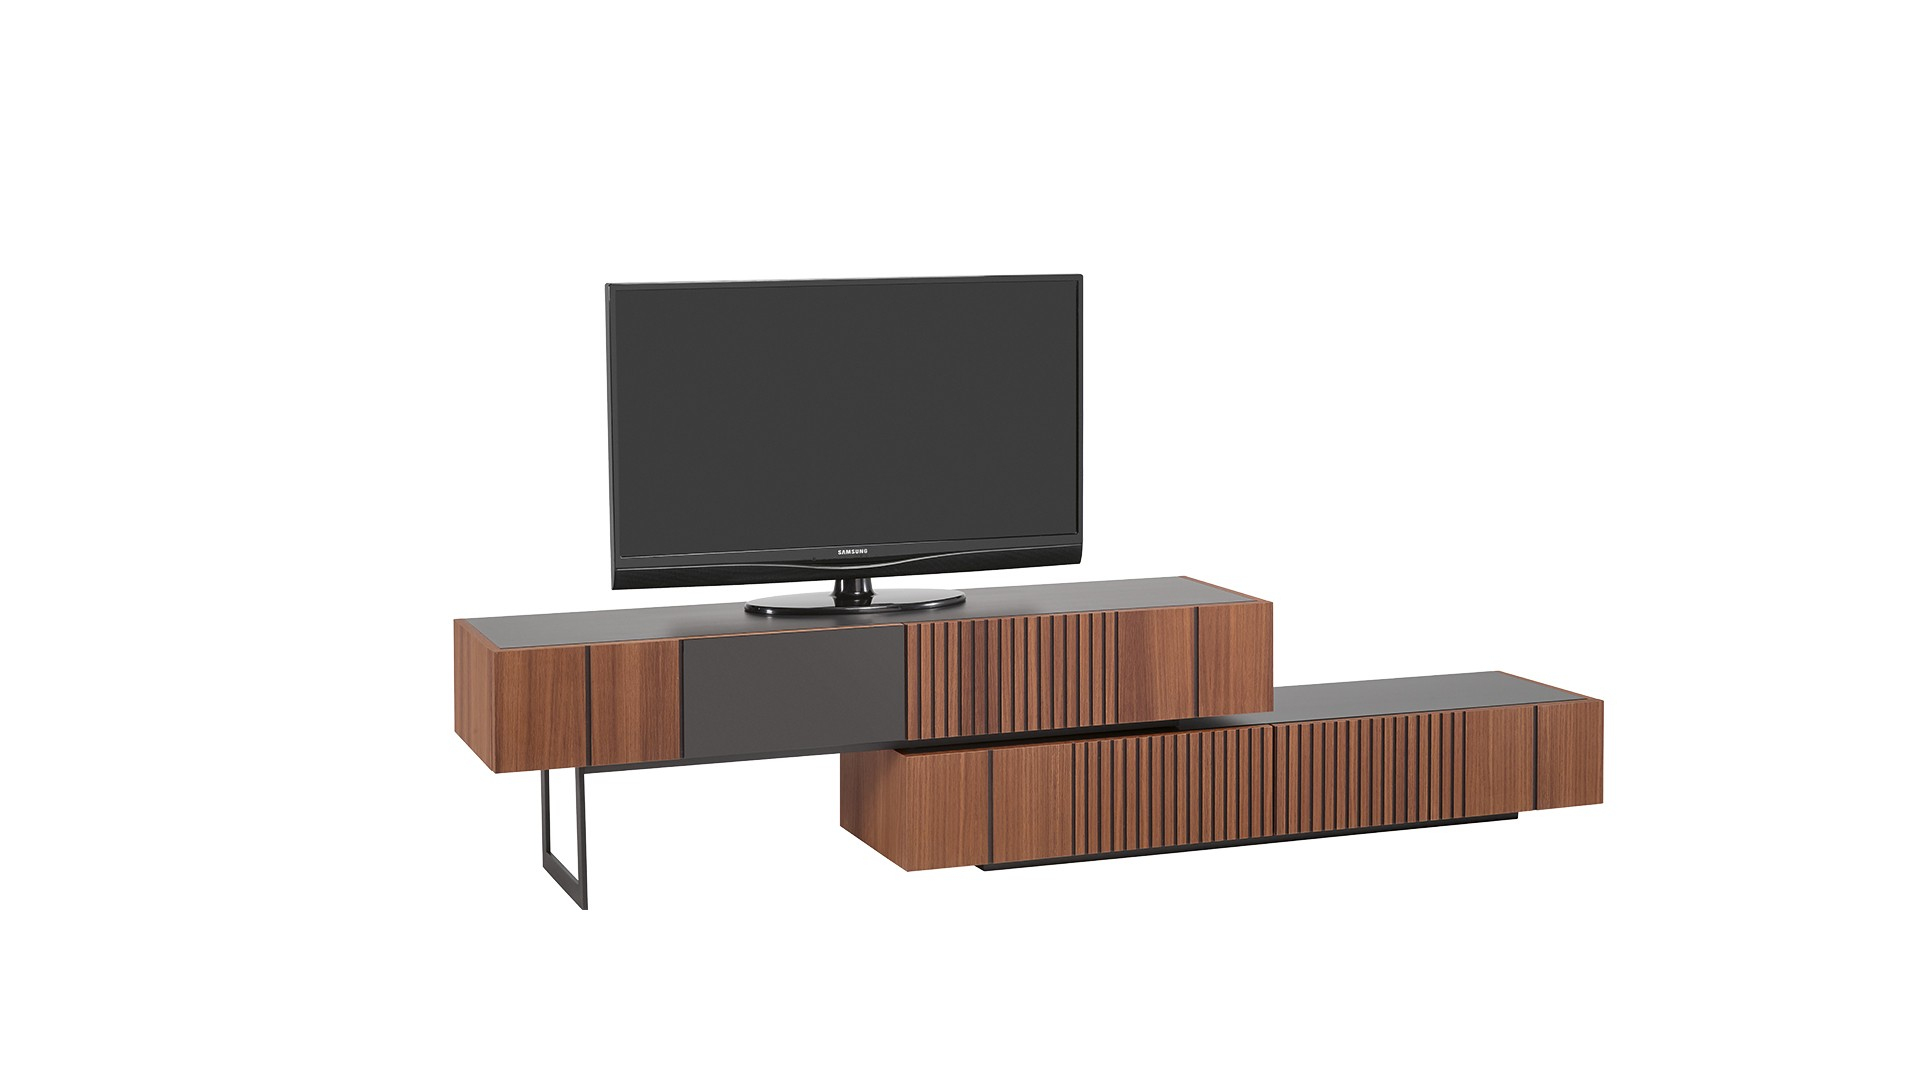 Meuble Tv Piana | Meuble Design Pour Sublimer Votre Salon intérieur Meuble Tv Piana